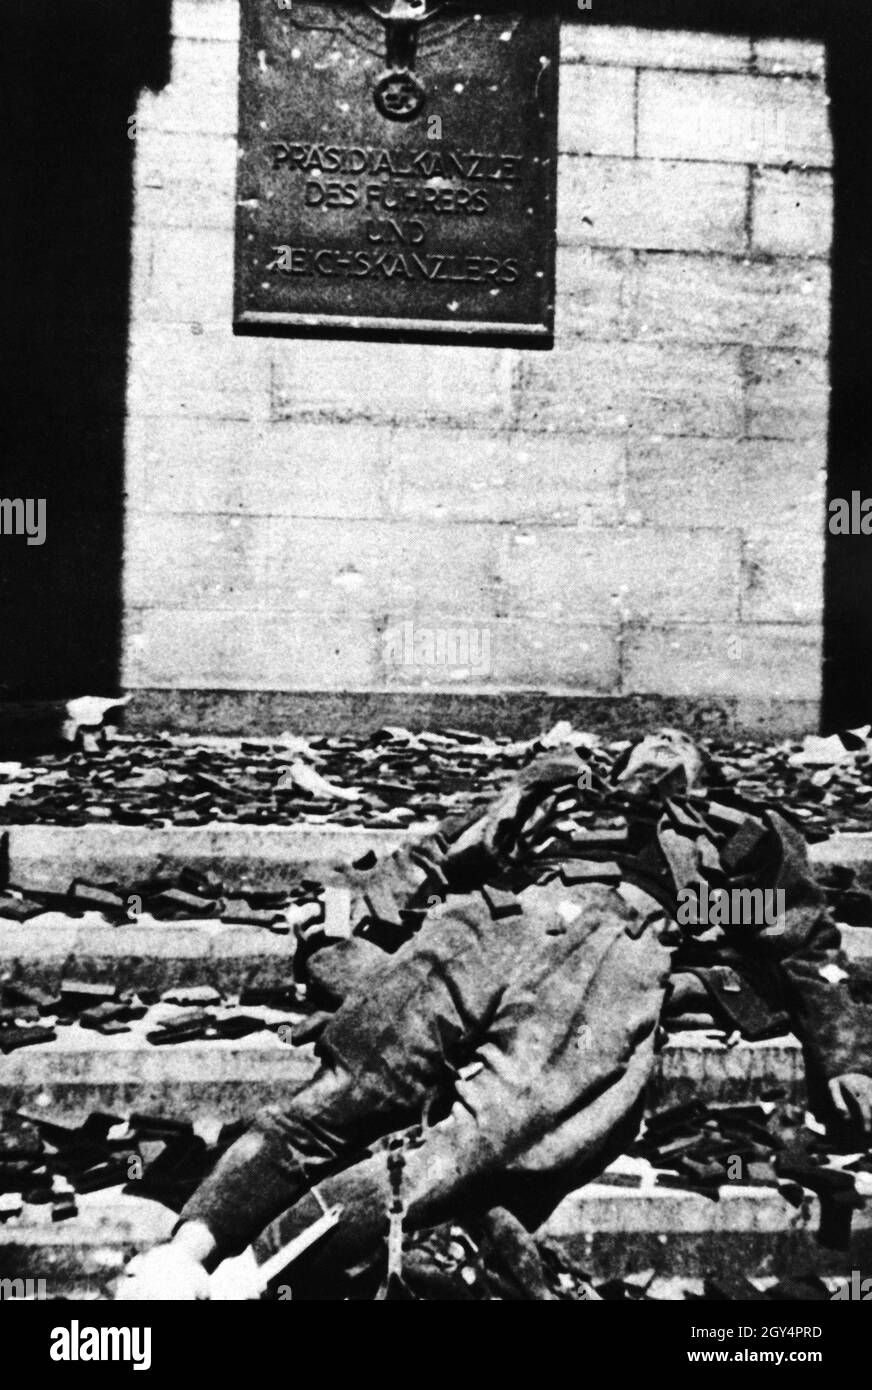 "Subito dopo la fine dei combattimenti per Berlino, un fotografo di guerra sovietico ha preso questa immagine di un corpo di ufficiale tedesco coperto di insegne del partito nazista di fronte ad un ingresso alla Cancelleria del Reich con la targa ''Cancelleria Presidenziale del Führer e Cancelliere del Reich''. [traduzione automatizzata]' Foto Stock